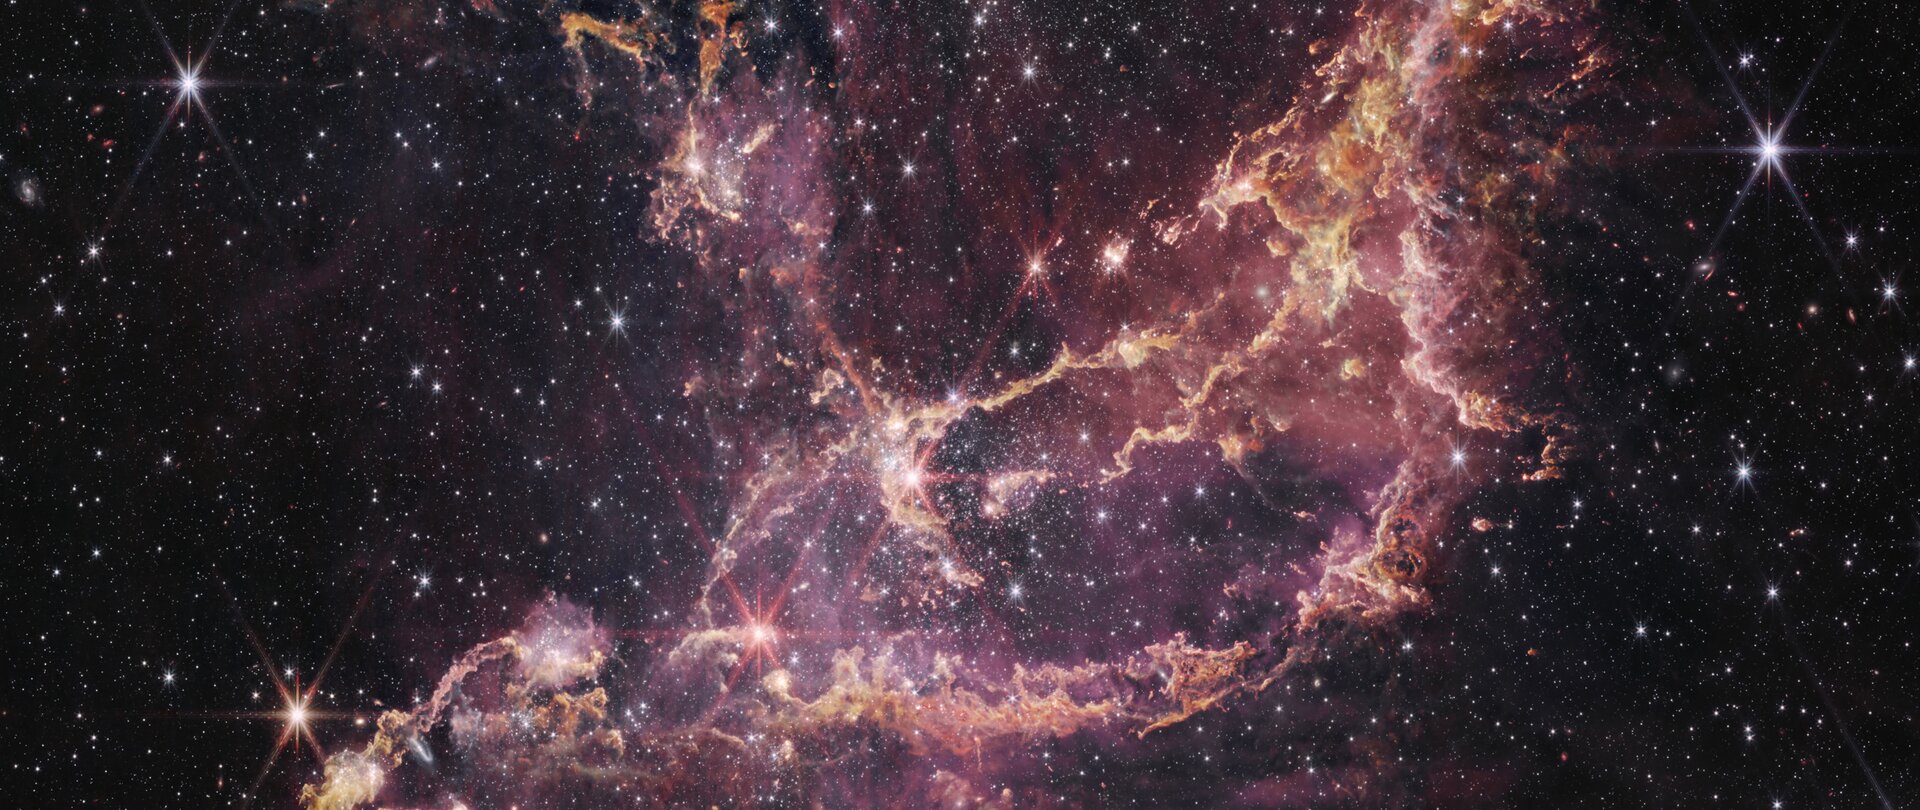 Aufnahme des James Webb Teleskops der Zwerg-Galaxie NCG 346 in der Nähe unserer Milchstrasse. | © NASA, ESA, CSA, STScI, A. Pagan (STScI); CC BY 4.0